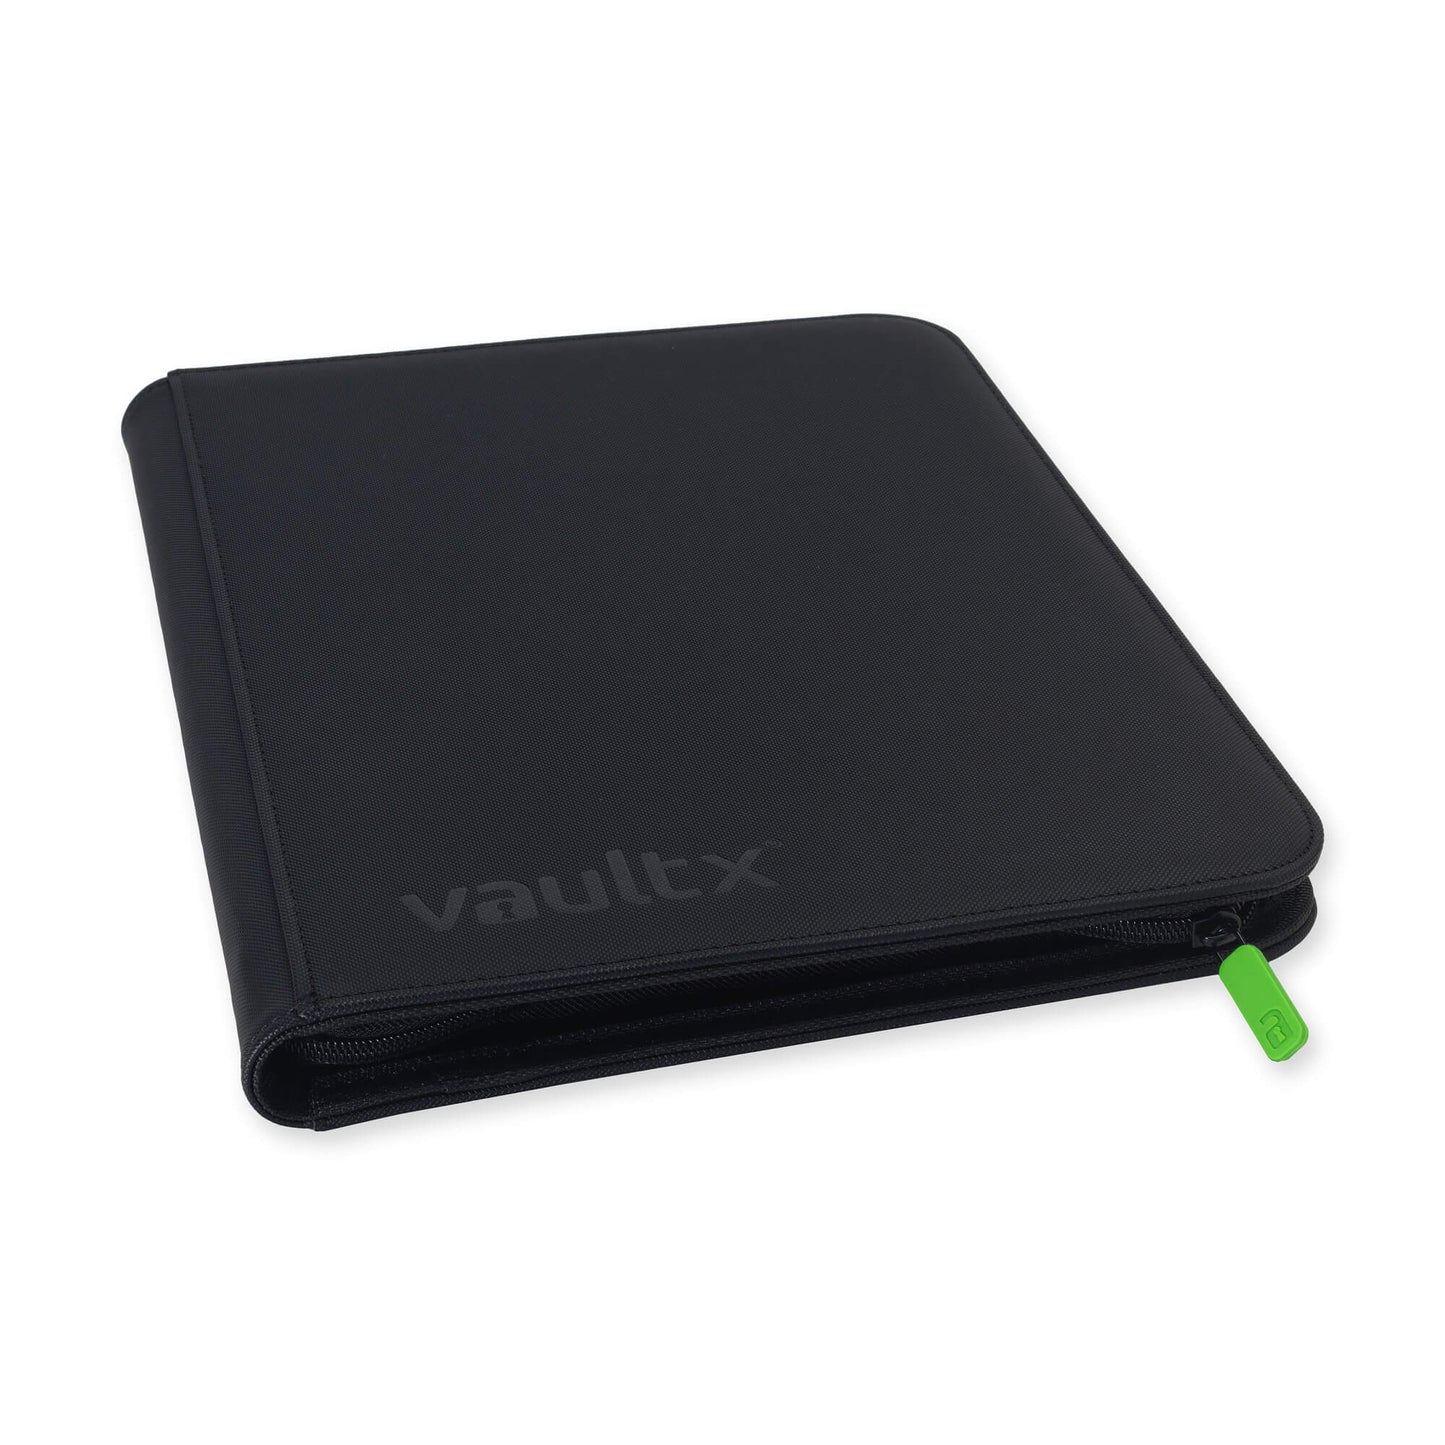 Vault X Premium eXo-Tec® 9 Pocket Zip Binder